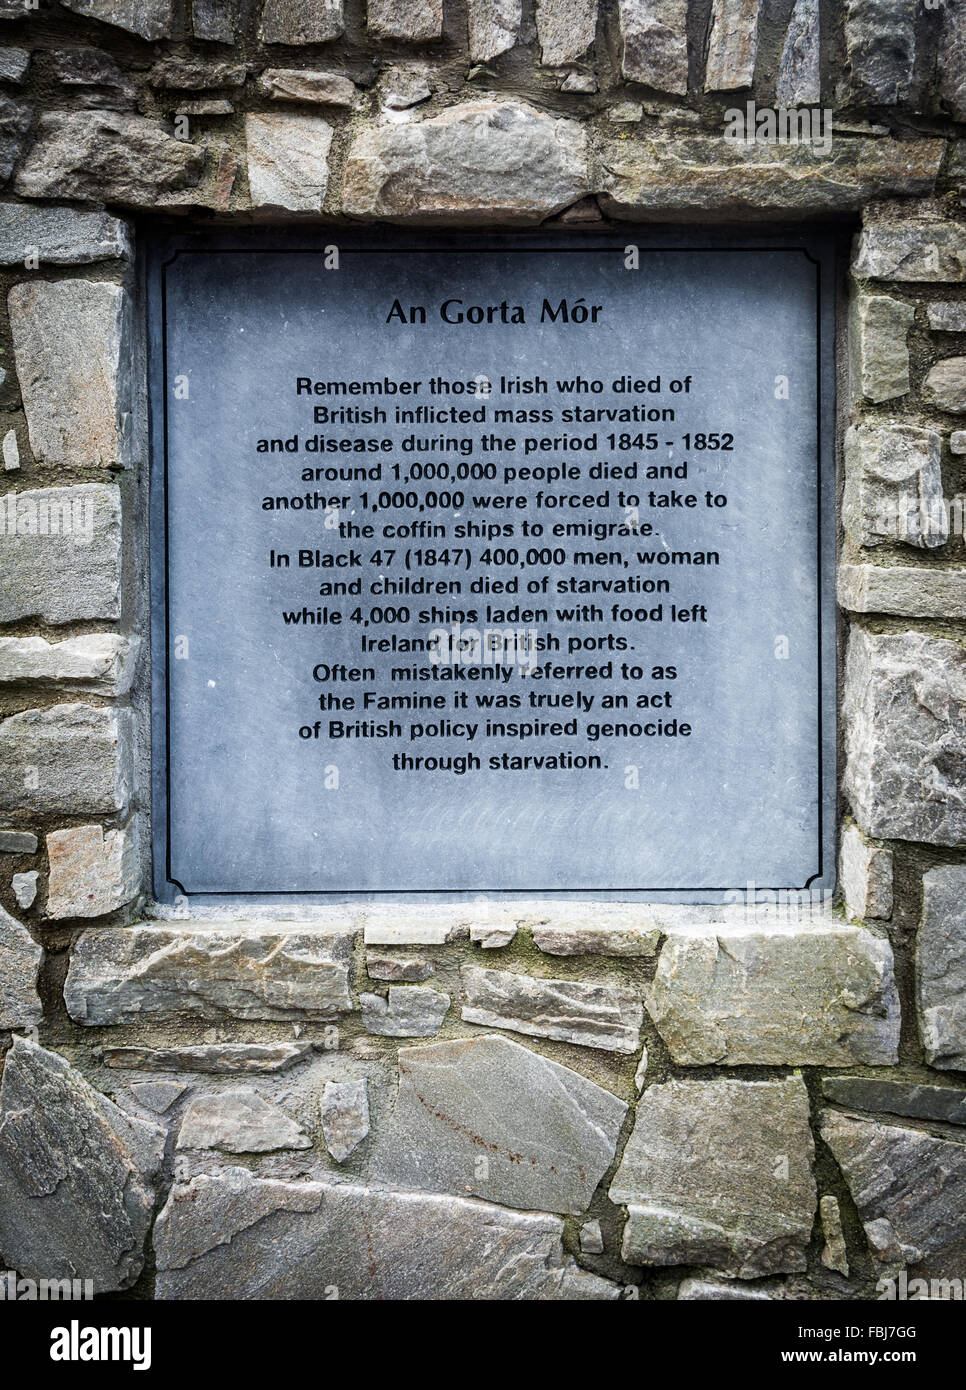 An Gorta Mor memorial plaque found on an Irish Republican memorial garden in Bundoran, County Donegal, Ireland. Stock Photo